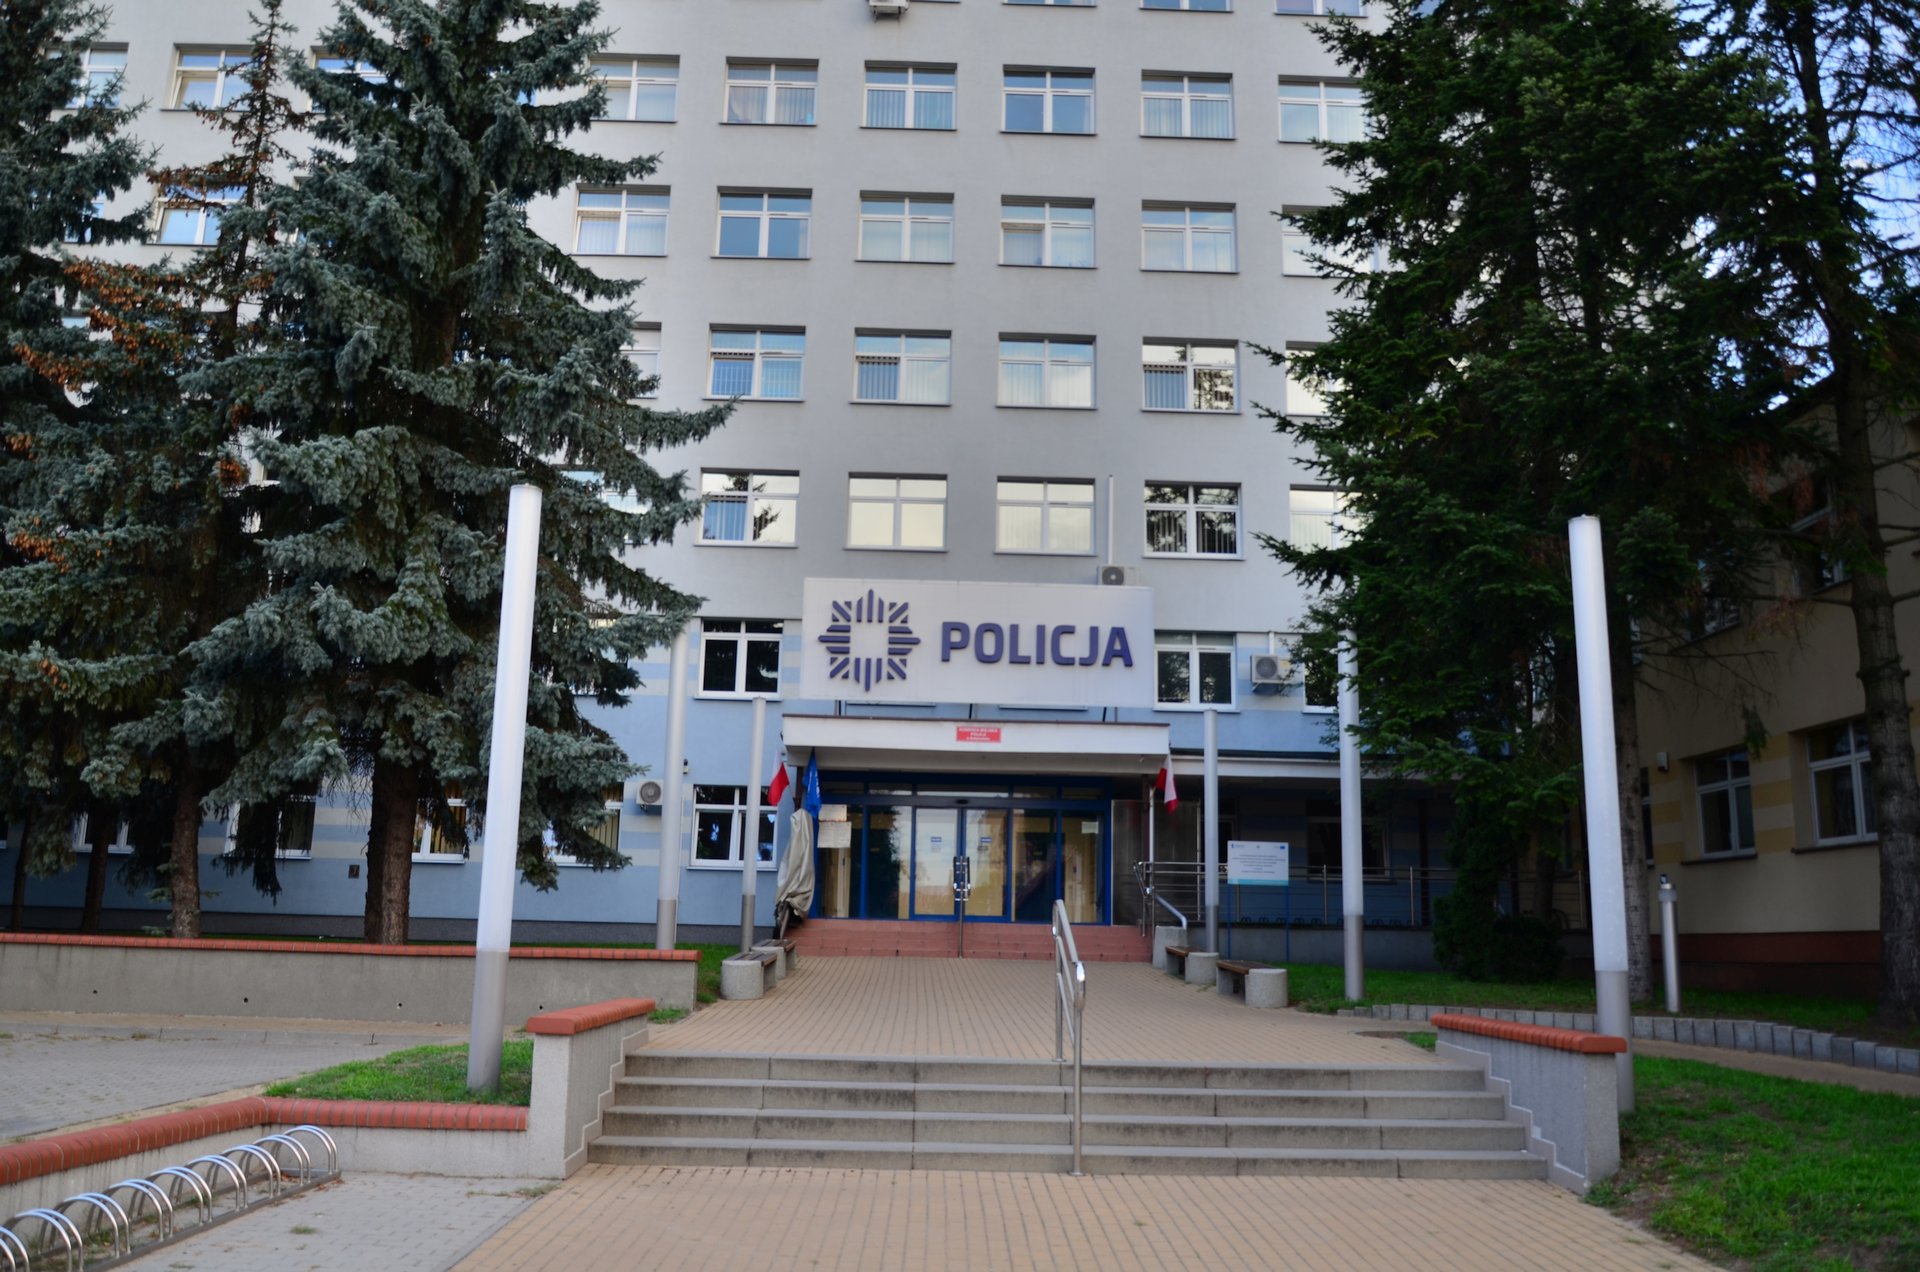 Białystok Policja Komenda Miejska Policji w Białymstoku Bemafree photo darmowe zdjęcie